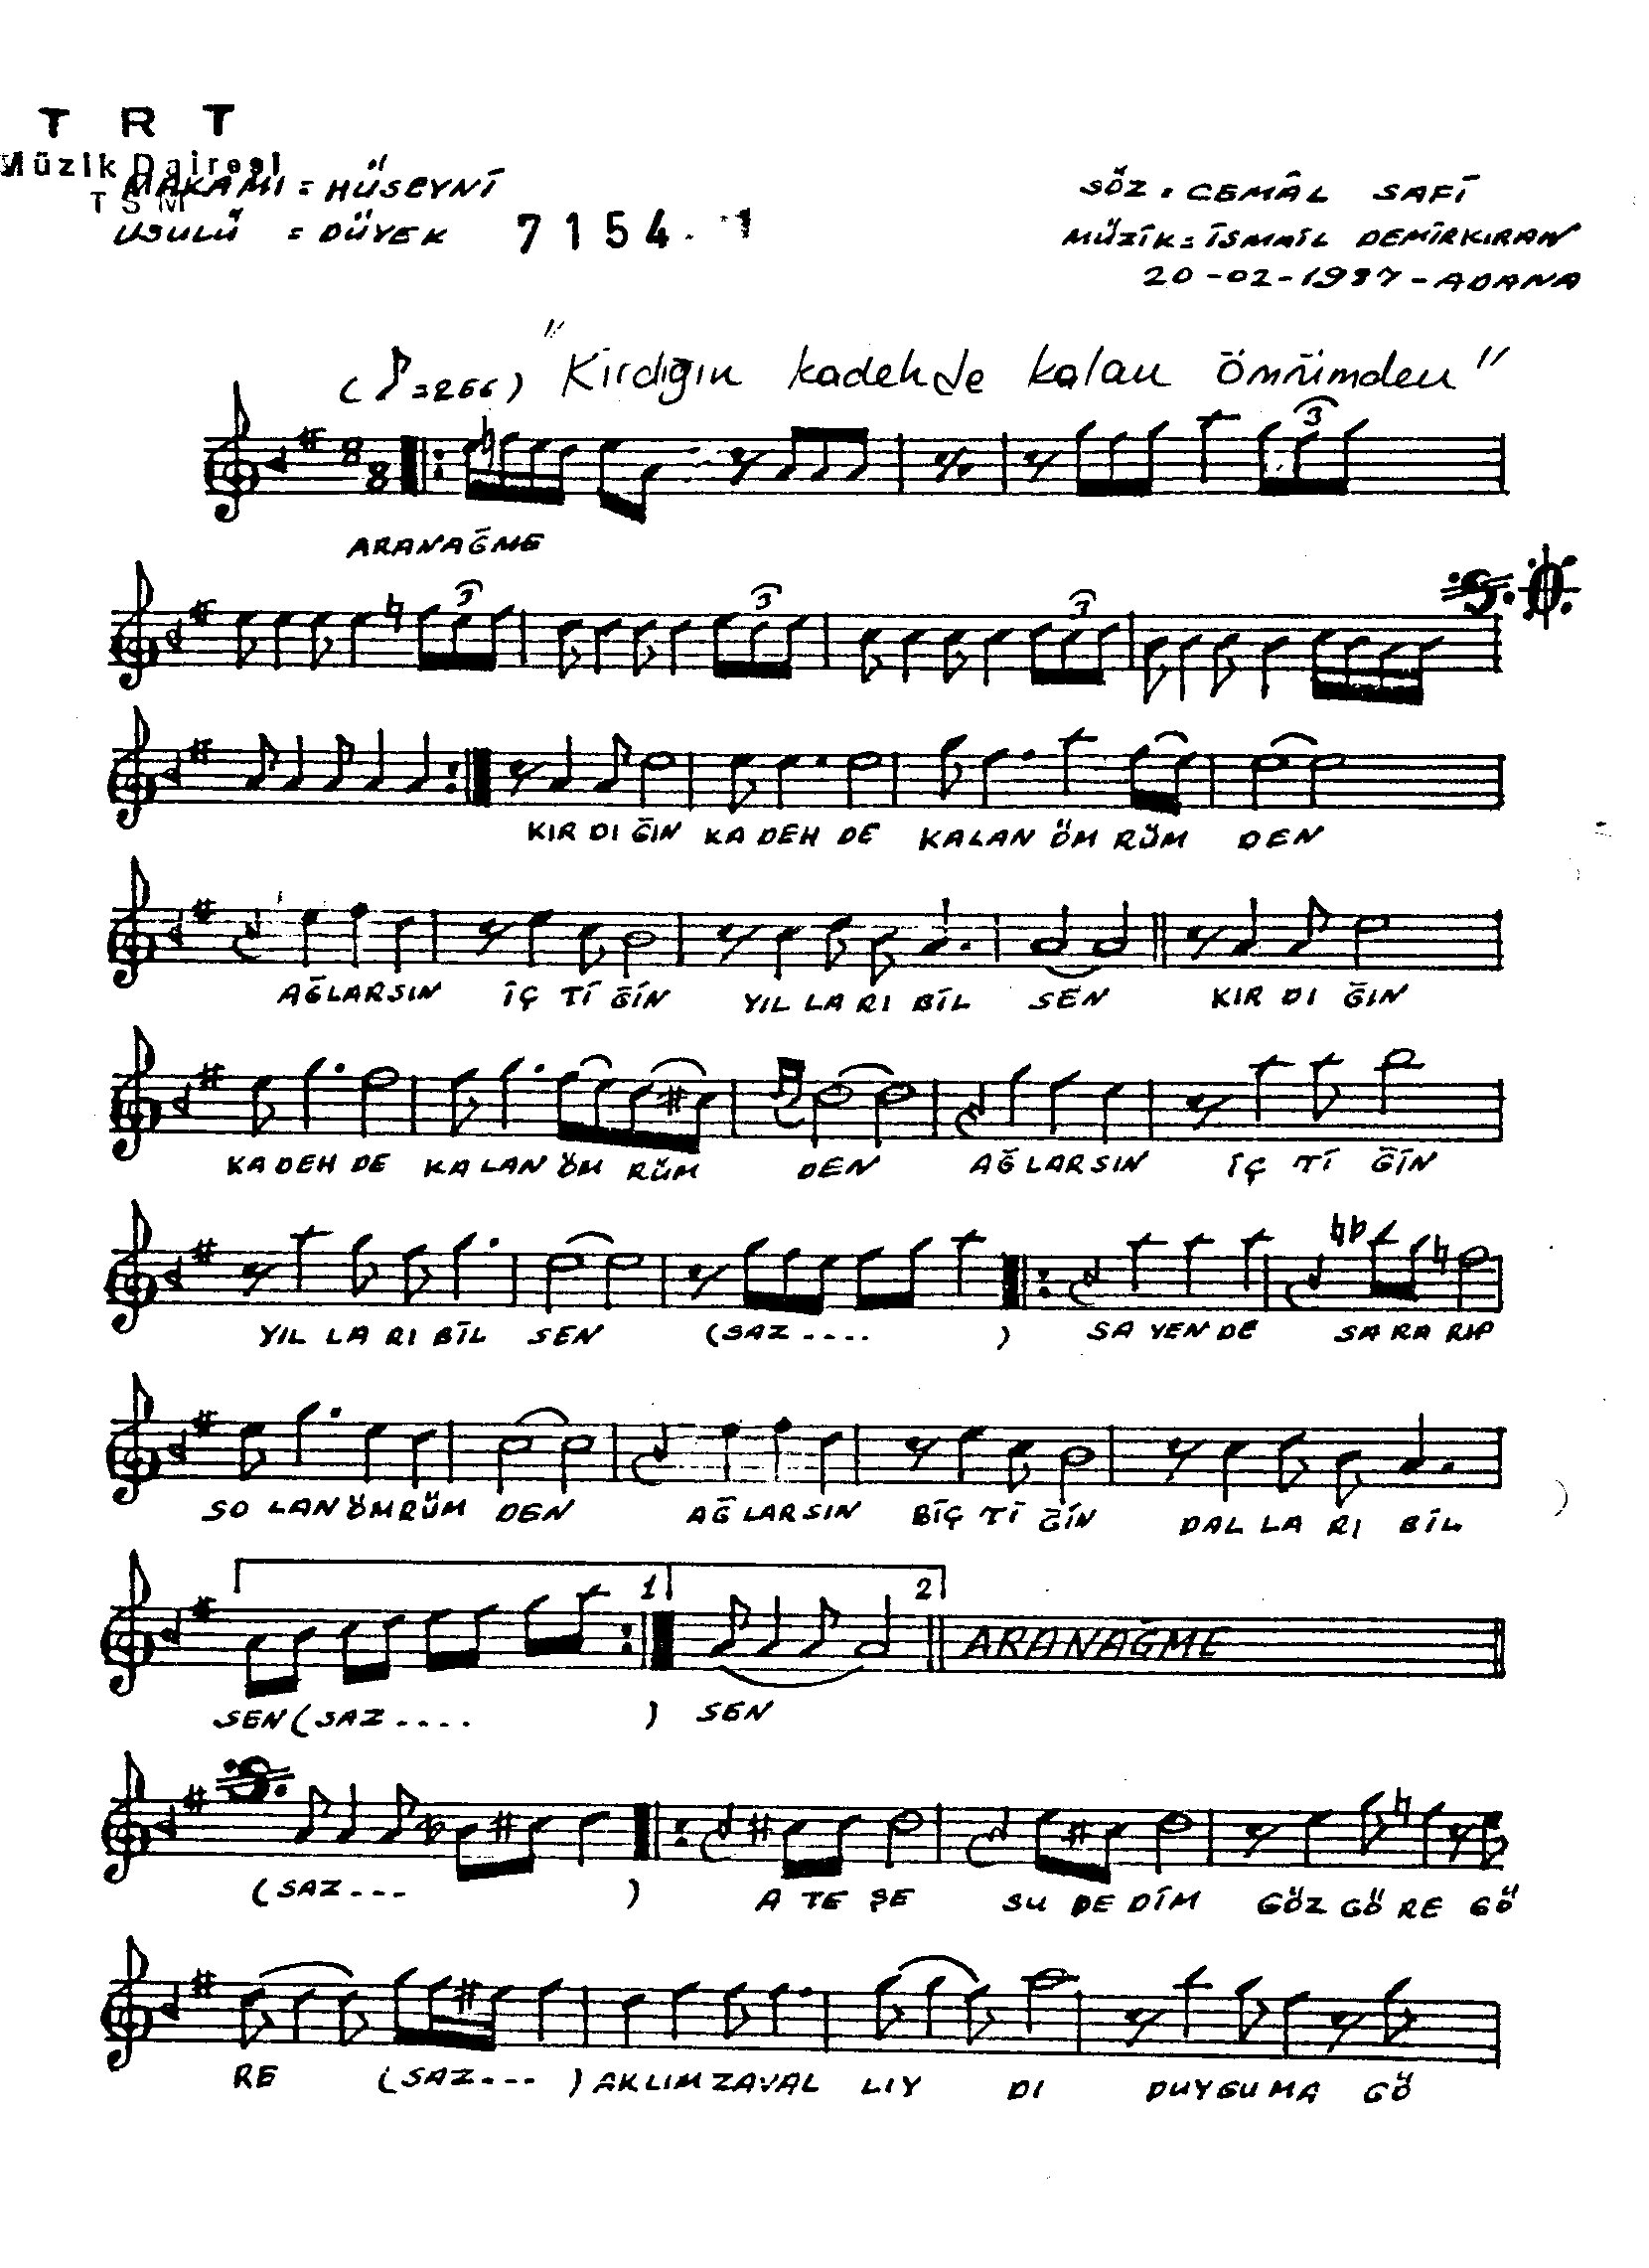 Hüseynî - Şarkı - İsmail Demirkıran - Sayfa 1